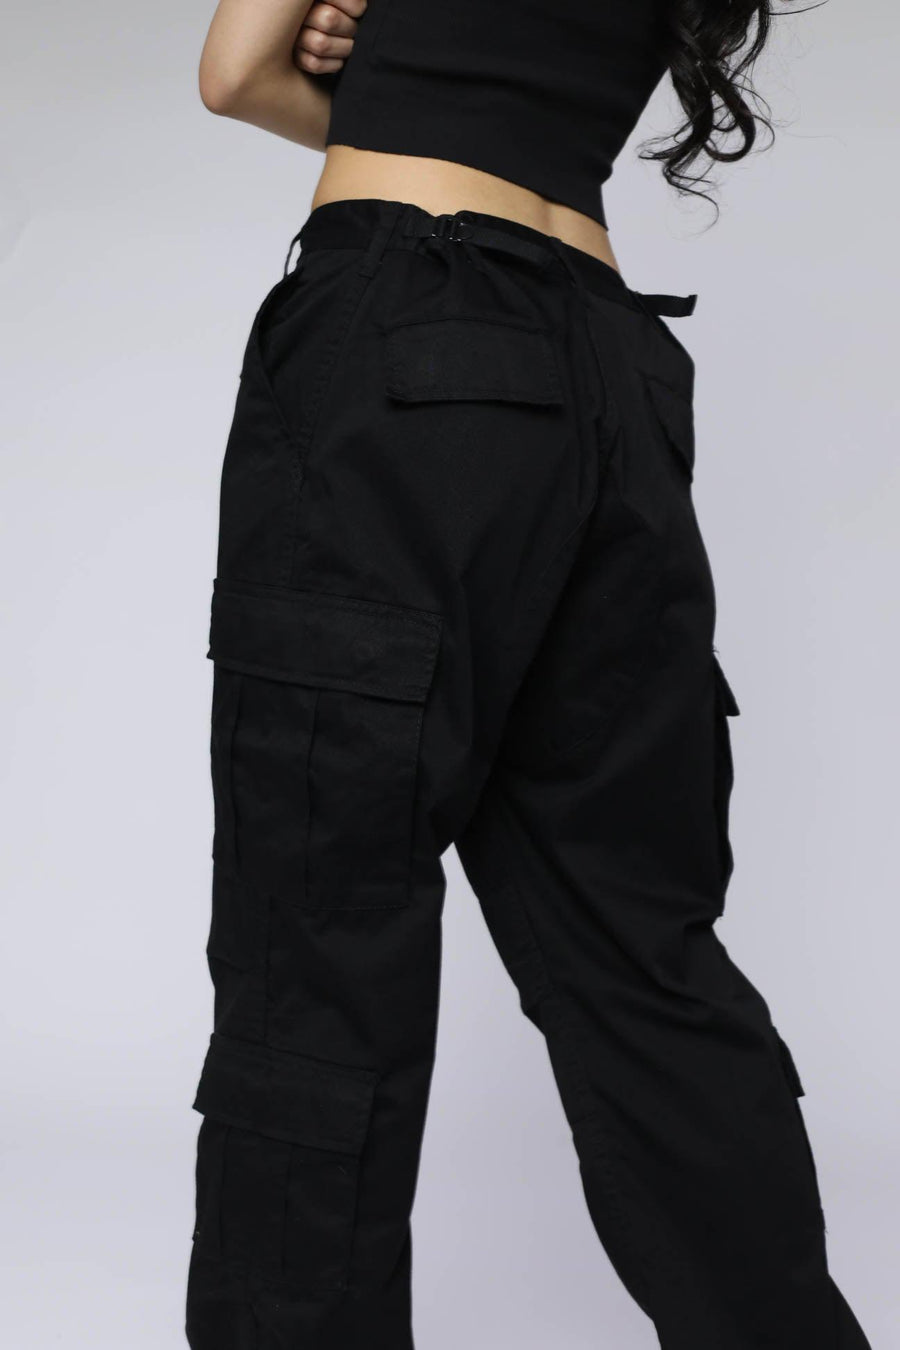 Desert Camo BDU Pants - S, M, XL – Frankie Collective